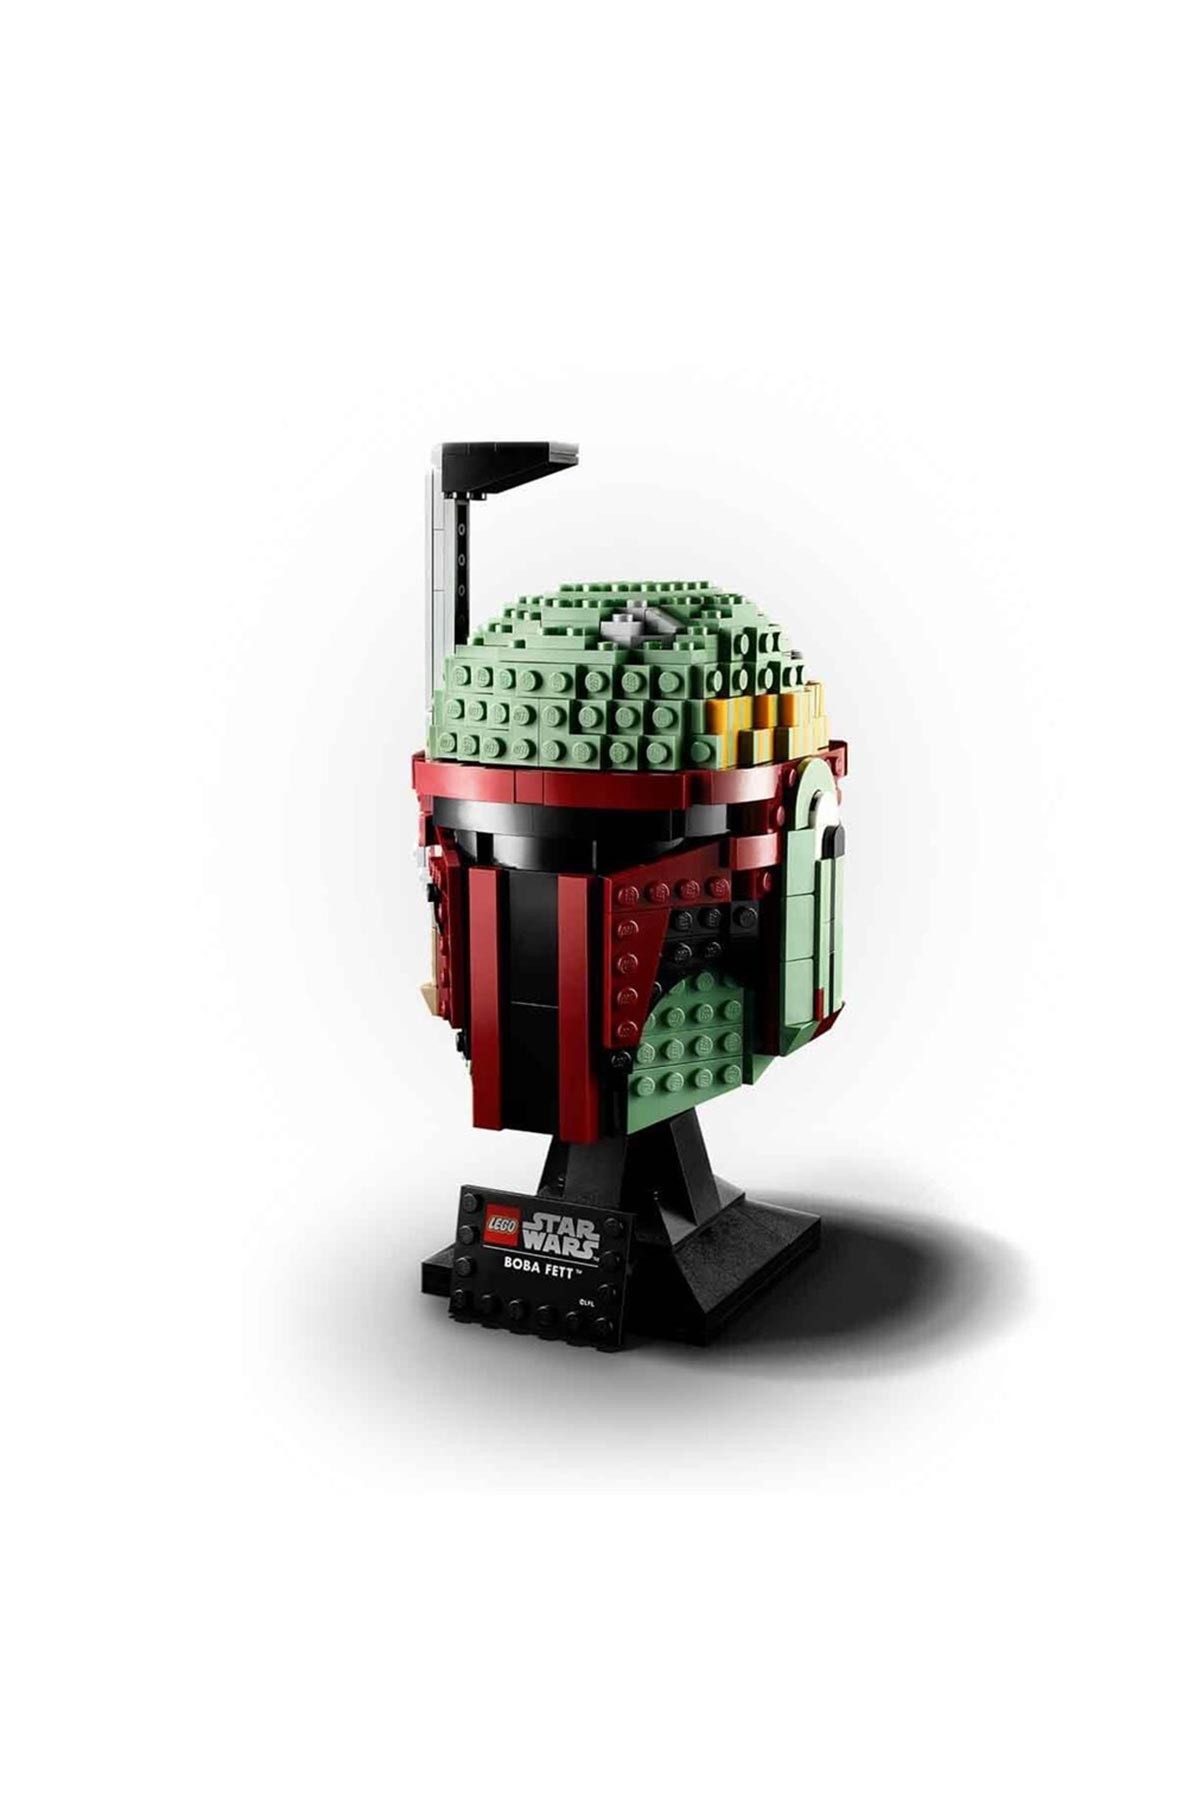 Lego Boba Fett Helmet